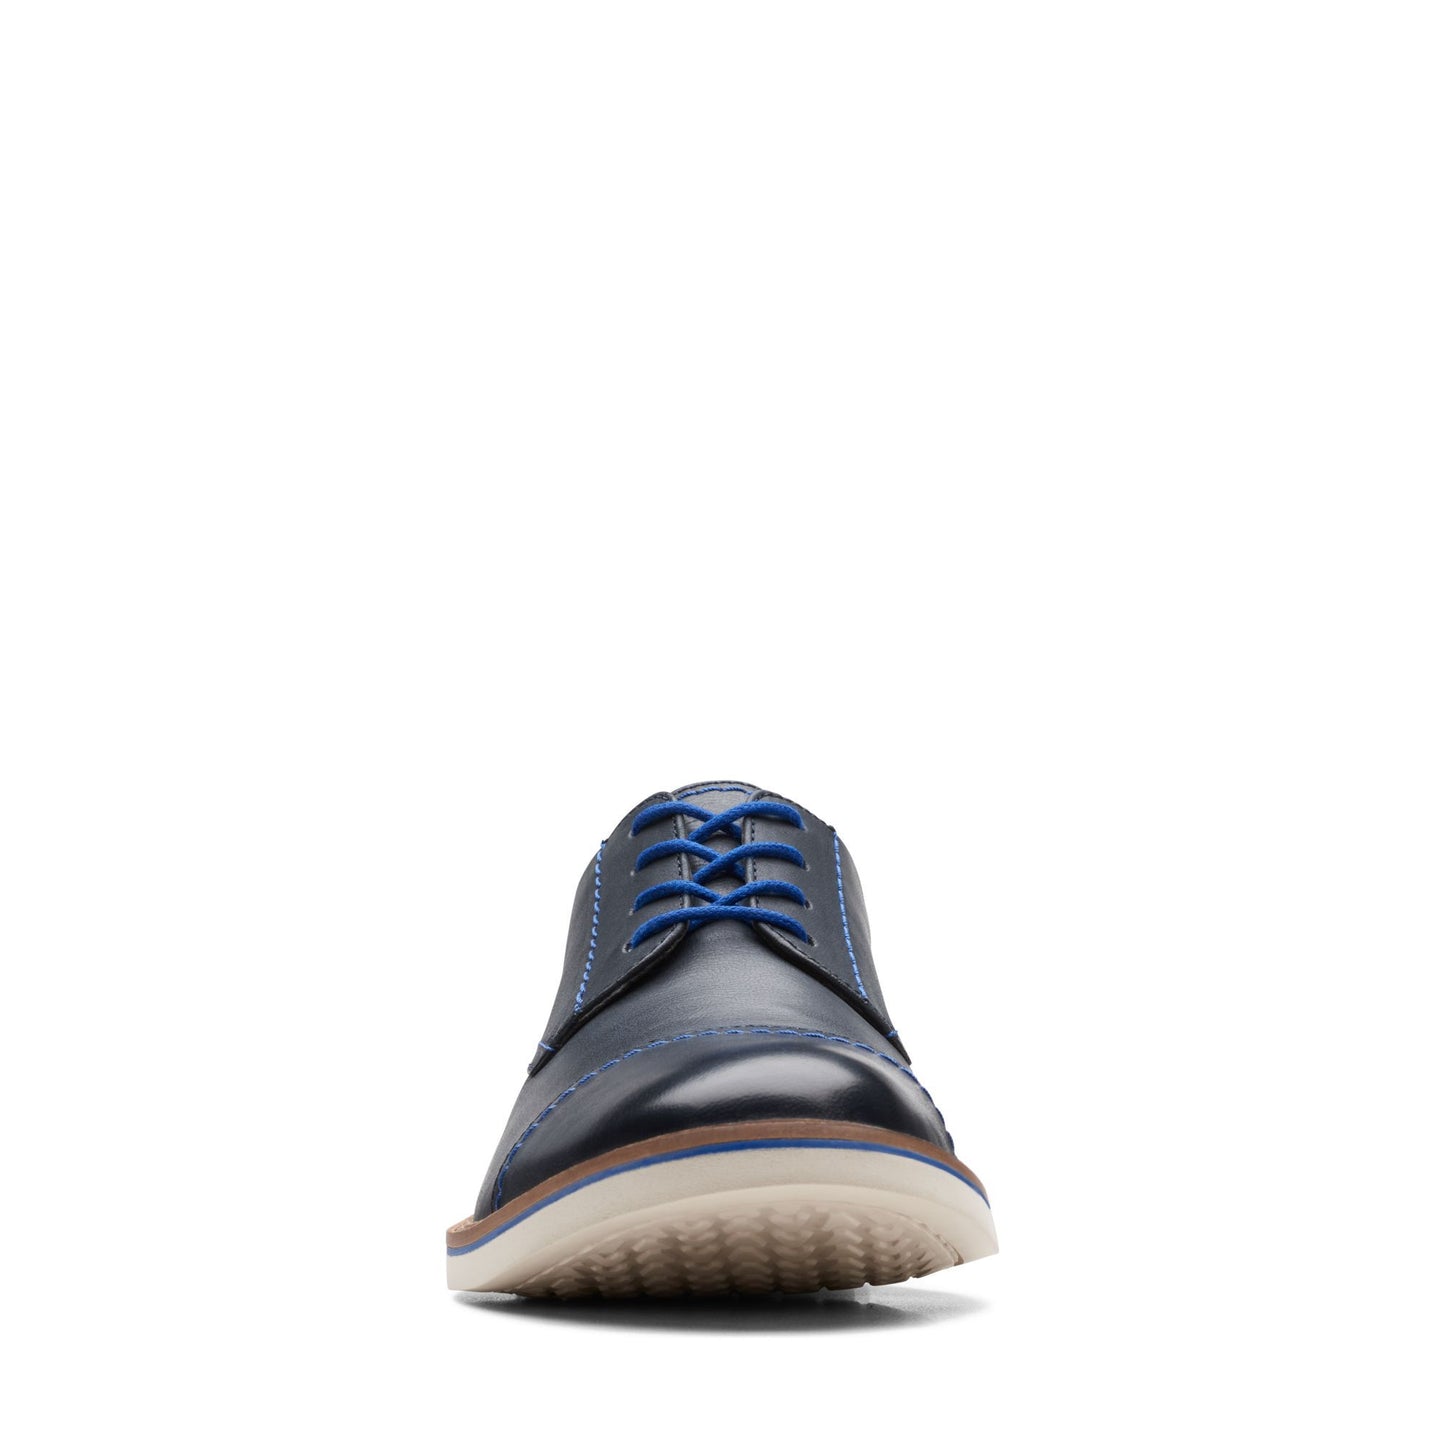 Zapatos Derby De La Marca Clarks Para Hombre Modelo Atticus Lt Cap Navy LeatherEn Color Azul